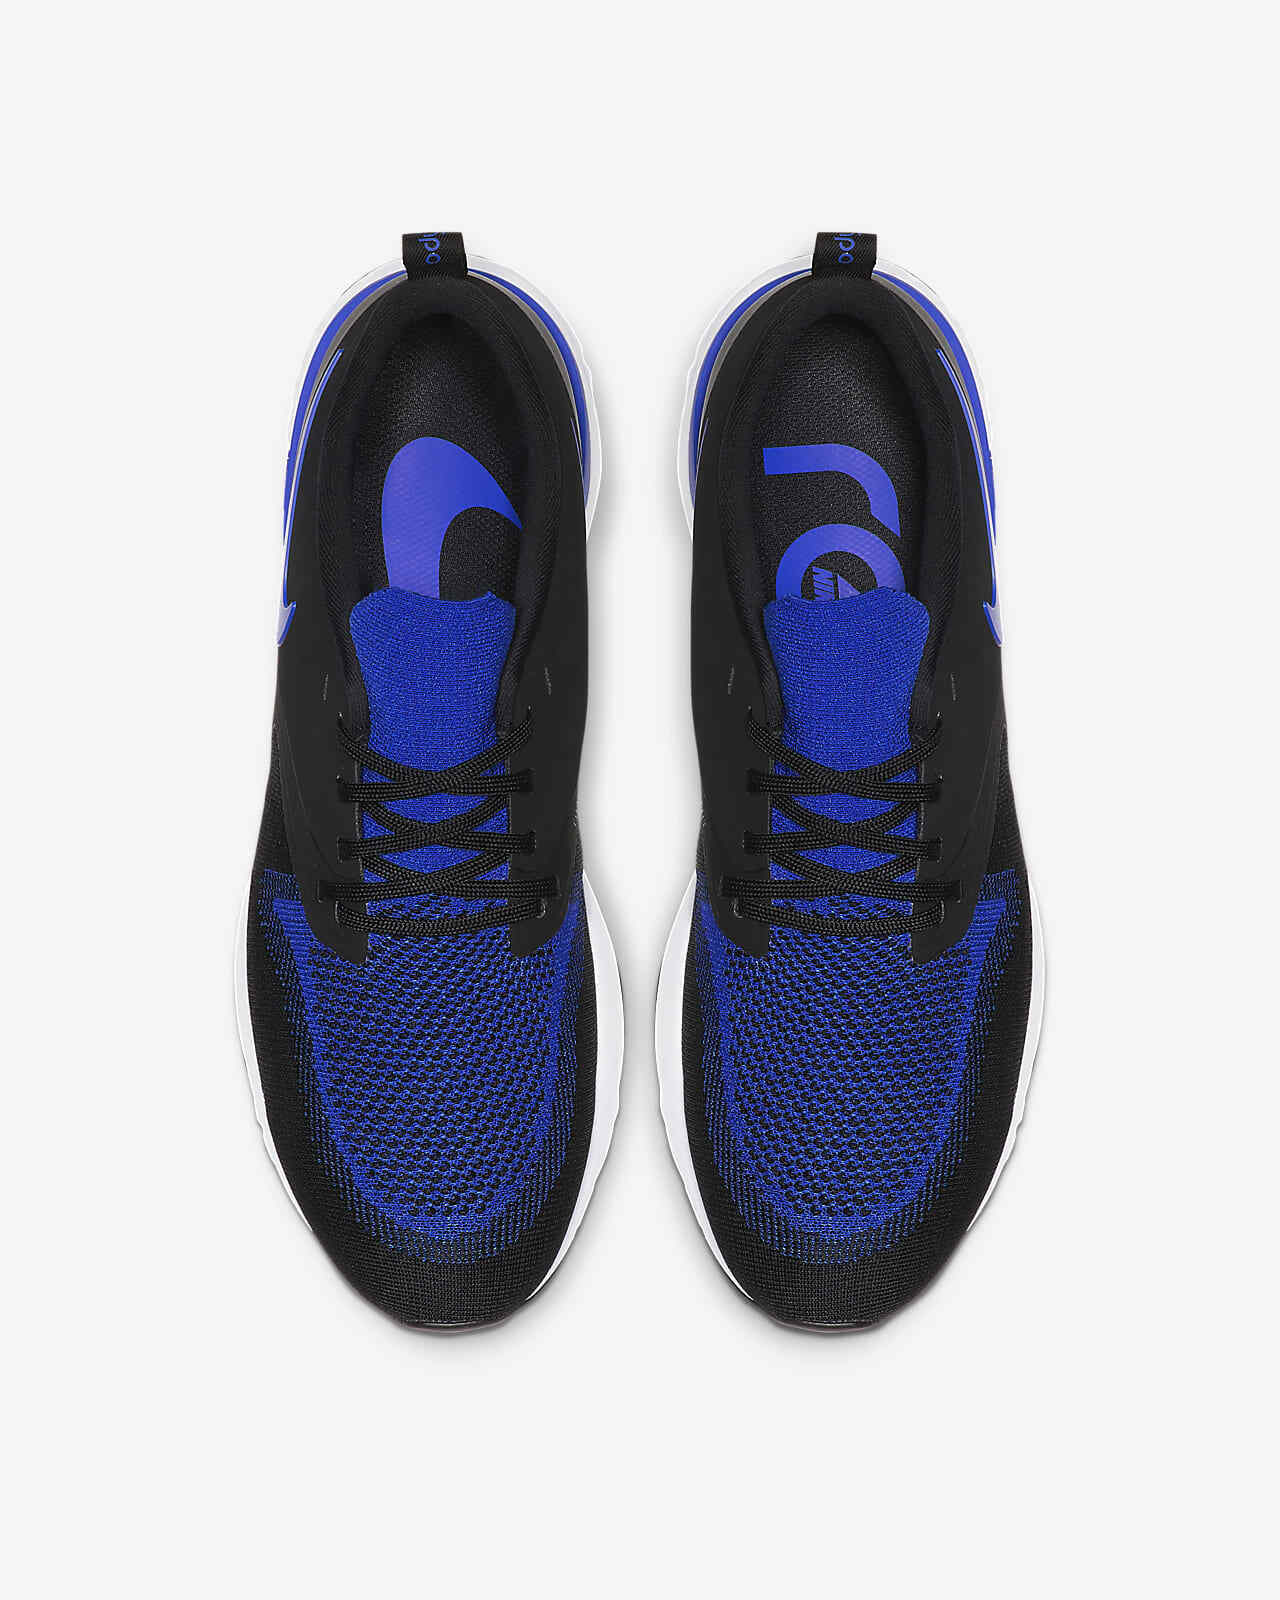 Men's Nike Odyssey React 2 Flyknit Running Shoes, AH1015 011 Multi Sizes Black/Racer Blue/White